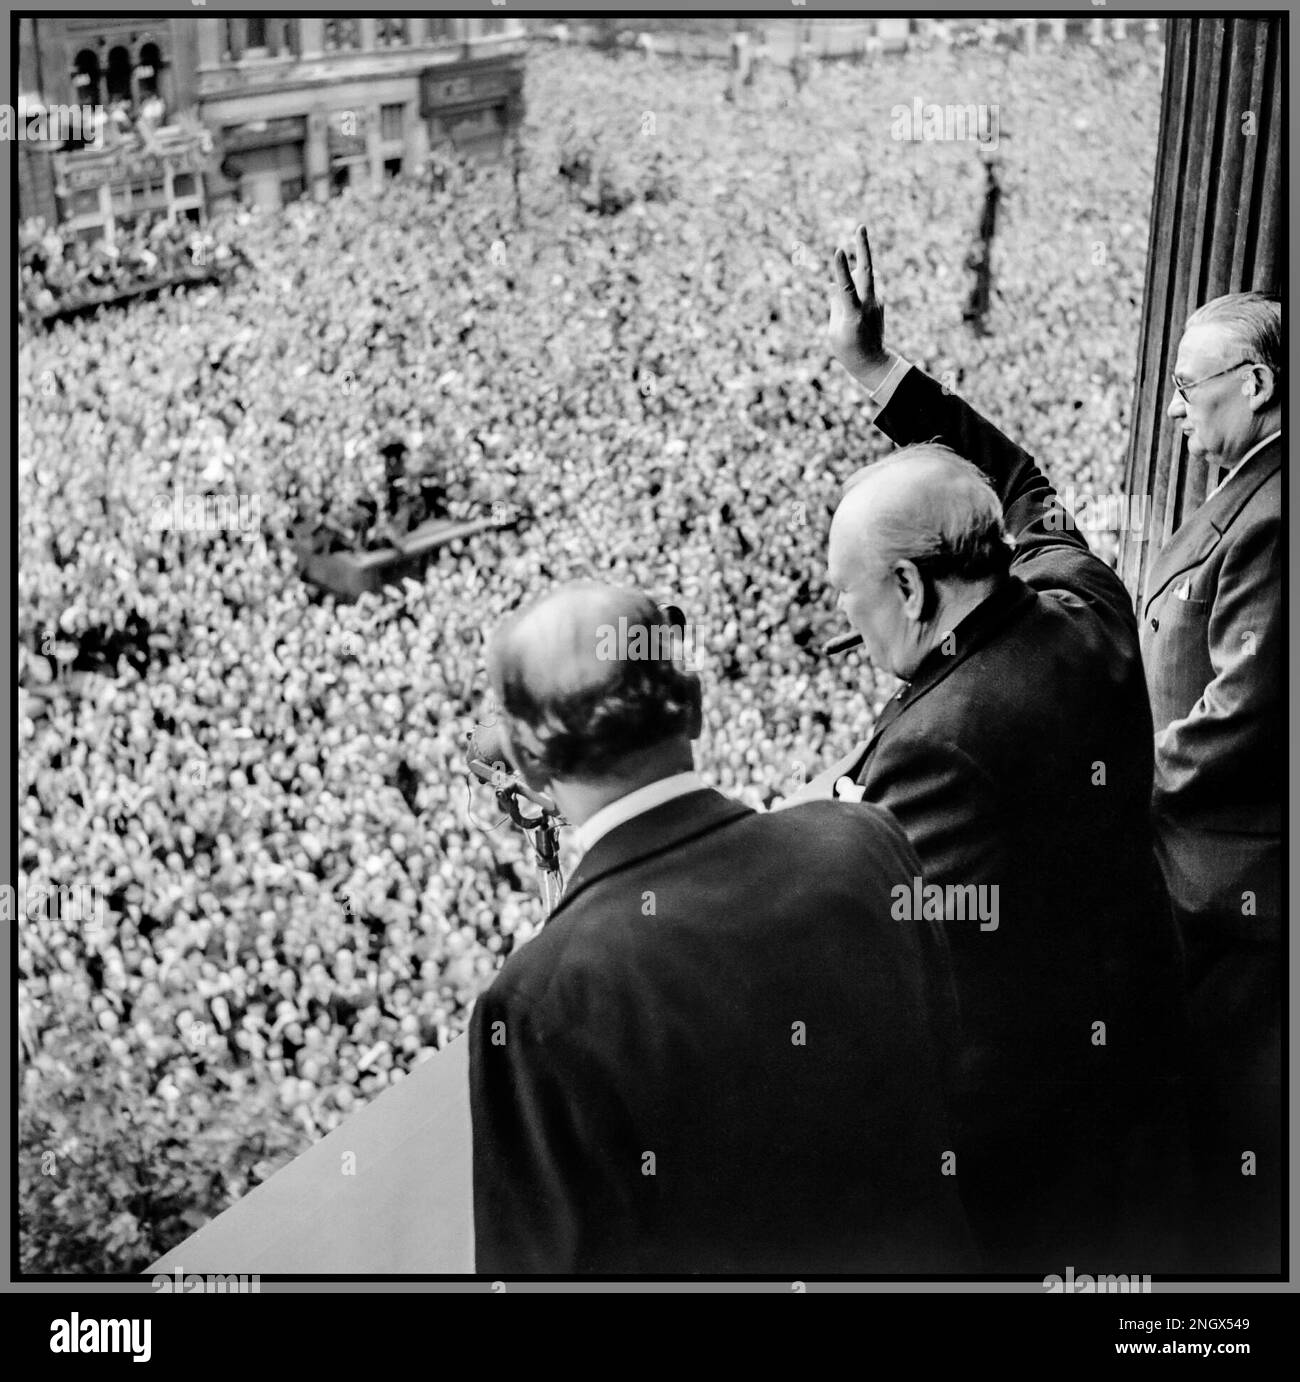 VE JOUR WW2 (Sir) Winston Churchill fait la vague à des foules éretatiques à Whitehall Londres lorsqu'ils célèbrent le VE jour, 8 mai 1945. « Victory in Europe » du balcon londonien du ministère de la Santé, le premier ministre Winston Churchill avec son cigare de marque, donne son célèbre signe « V for Victory » pour masser des foules à Whitehall le même jour qu'il a diffusé à la nation britannique que la guerre contre l'Allemagne nazie avait été gagnée, 8 mai 1945 (VE Day). À la gauche de Churchill se trouve Sir John Anderson, le chancelier de l'Échiquier. À la droite de Churchill se trouve Ernest Bevin, ministre du travail. 8 mai 1945 Banque D'Images